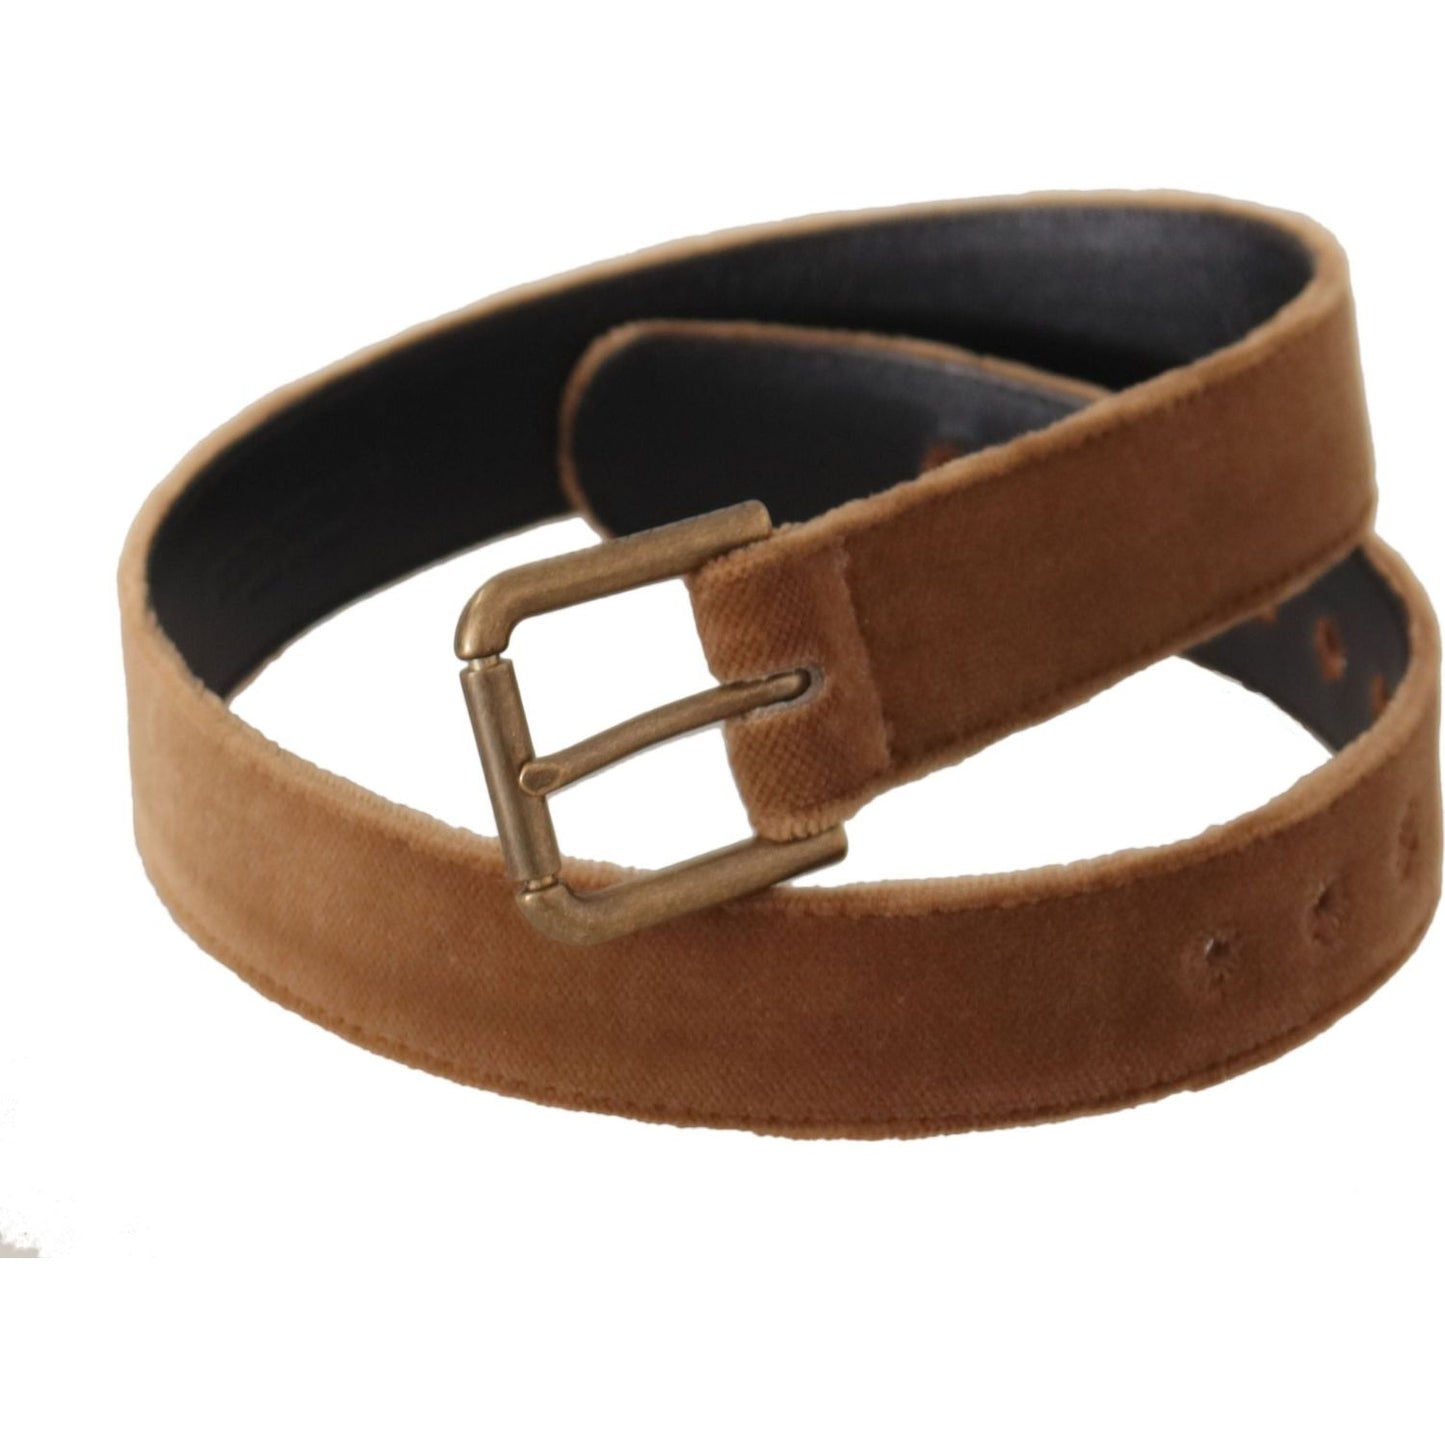 Dolce & Gabbana Elegant Engraved Buckle Leather Belt brown-velvet-bronze-vintage-logo-metal-buckle-belt IMG_0680-1-6643f01b-596.jpg